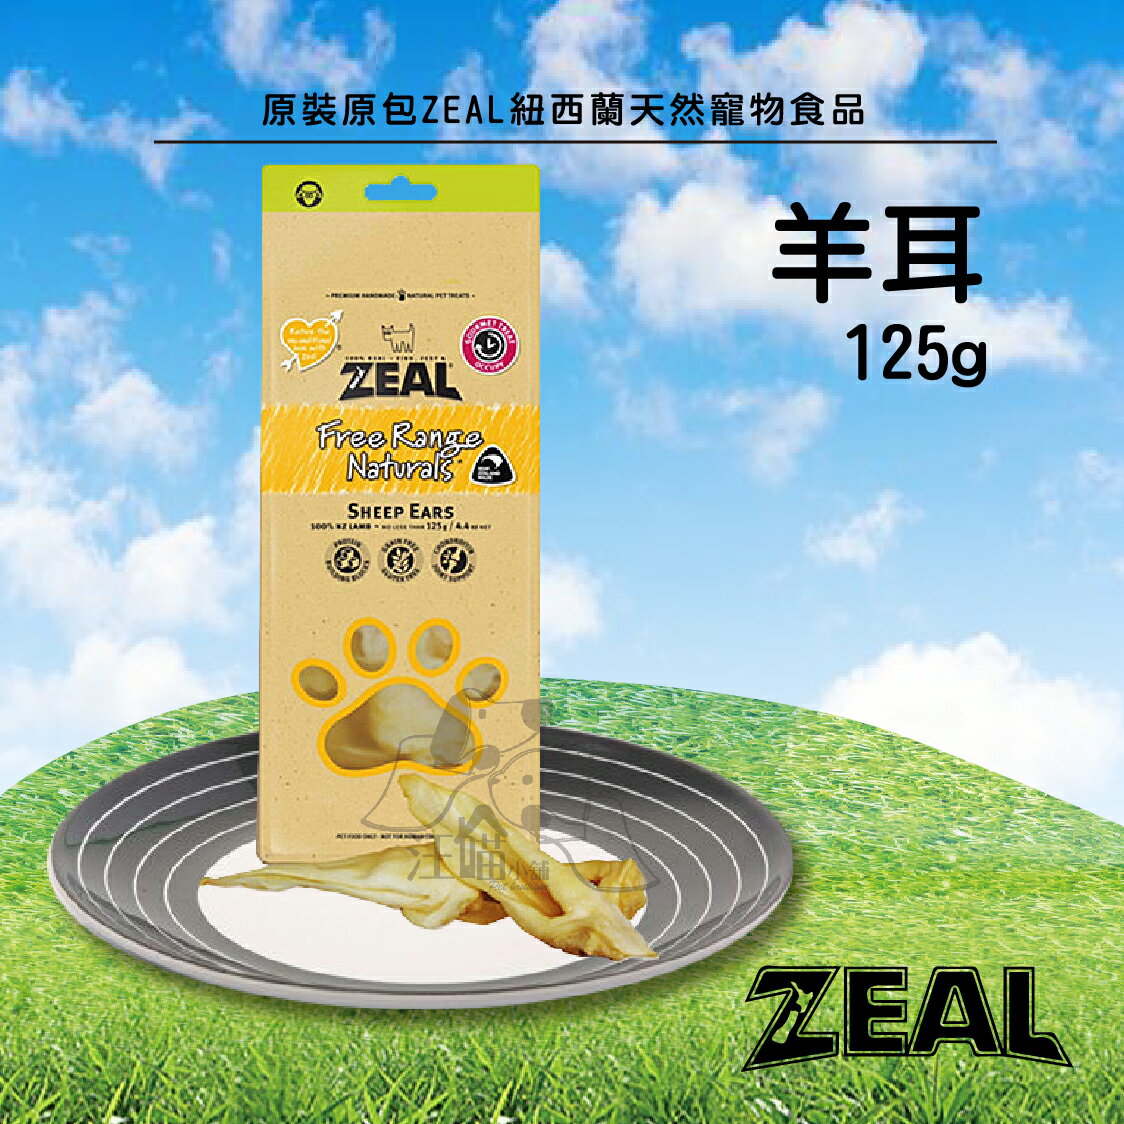 原裝原包ZEAL紐西蘭天然寵物食品【羊耳】125g